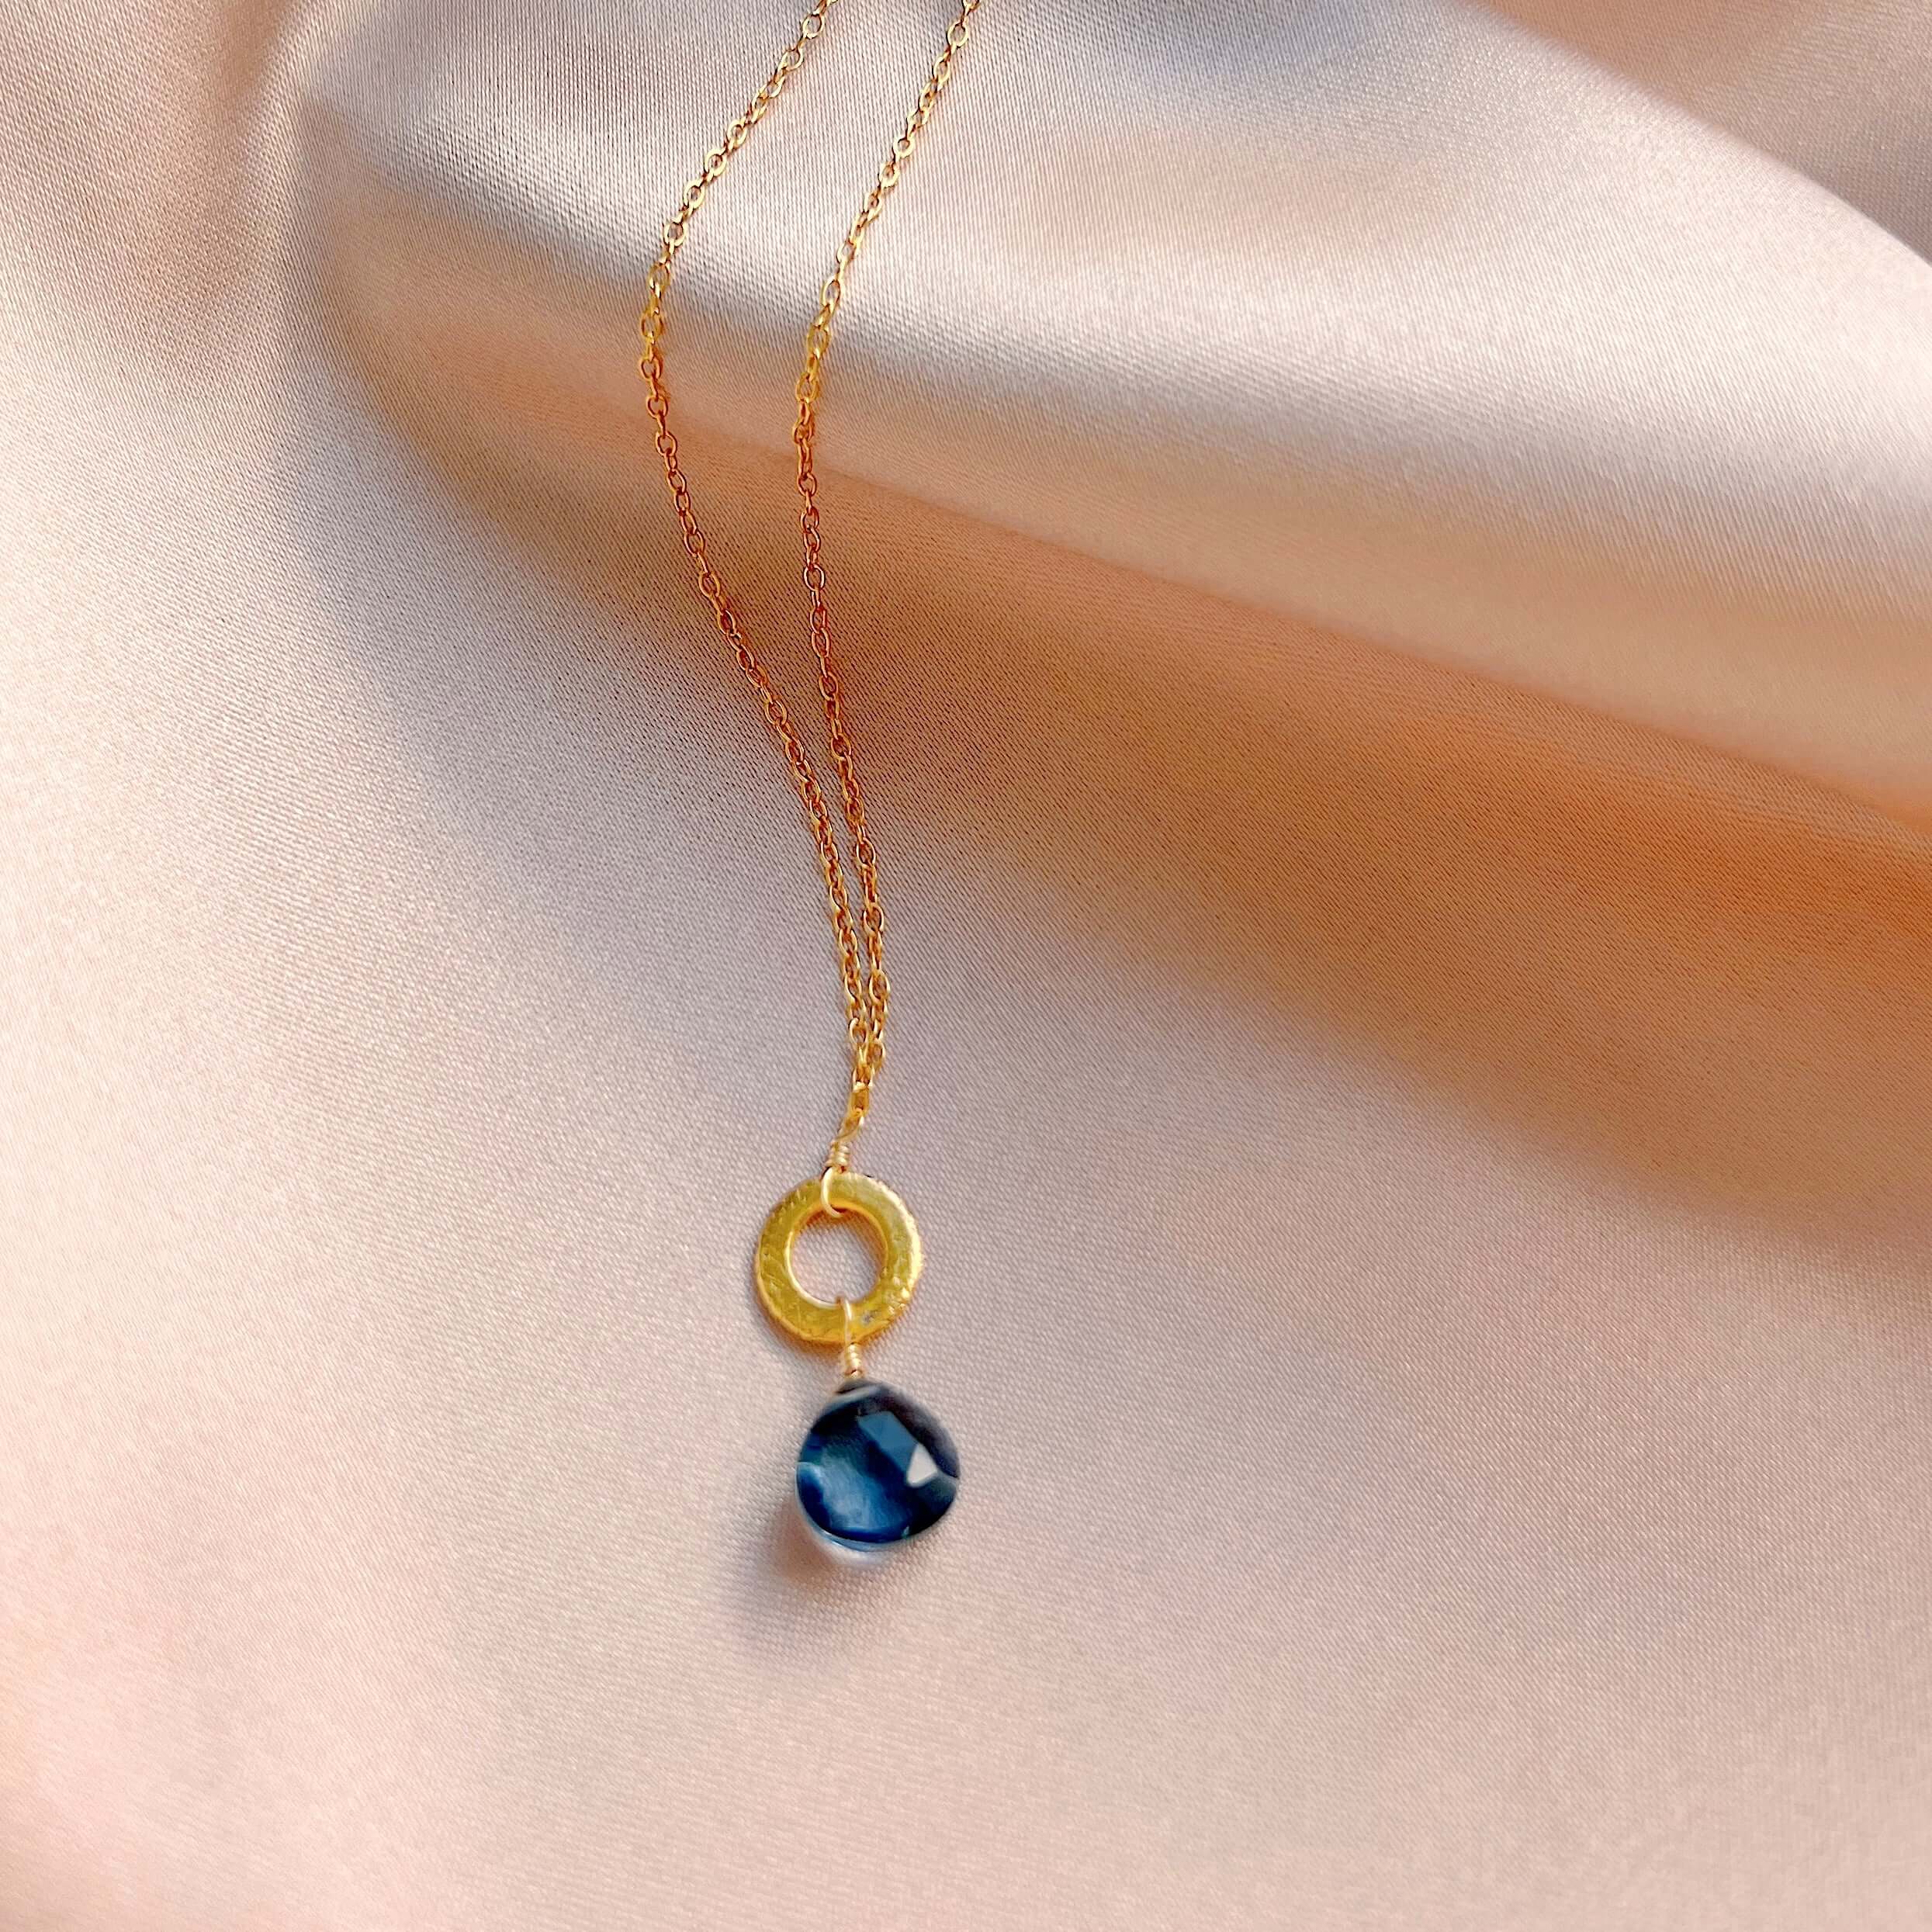 Lolite Gemstone Pendant Necklace - 14k Gold Plated Elegance